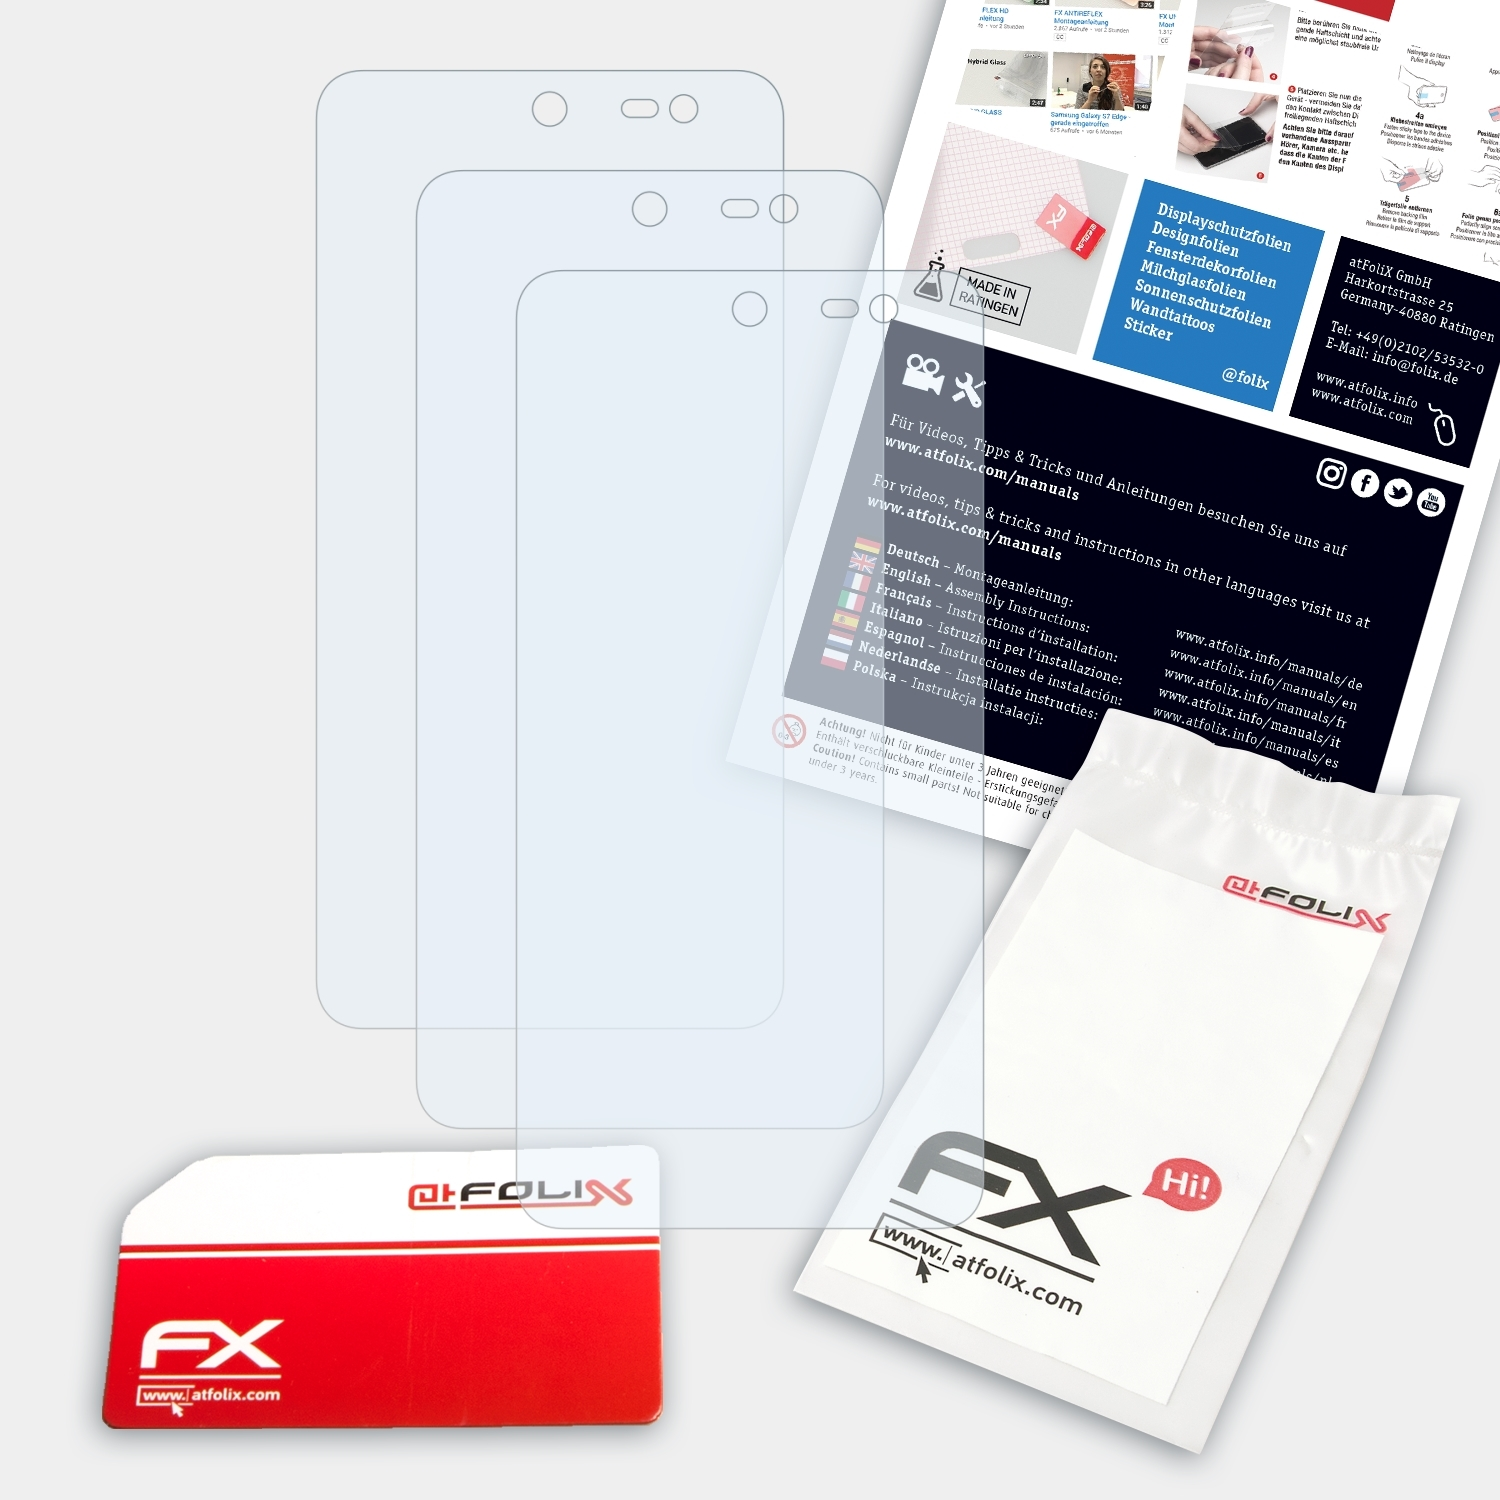 FX-Clear Displayschutz(für Swift) WileyFox ATFOLIX 3x